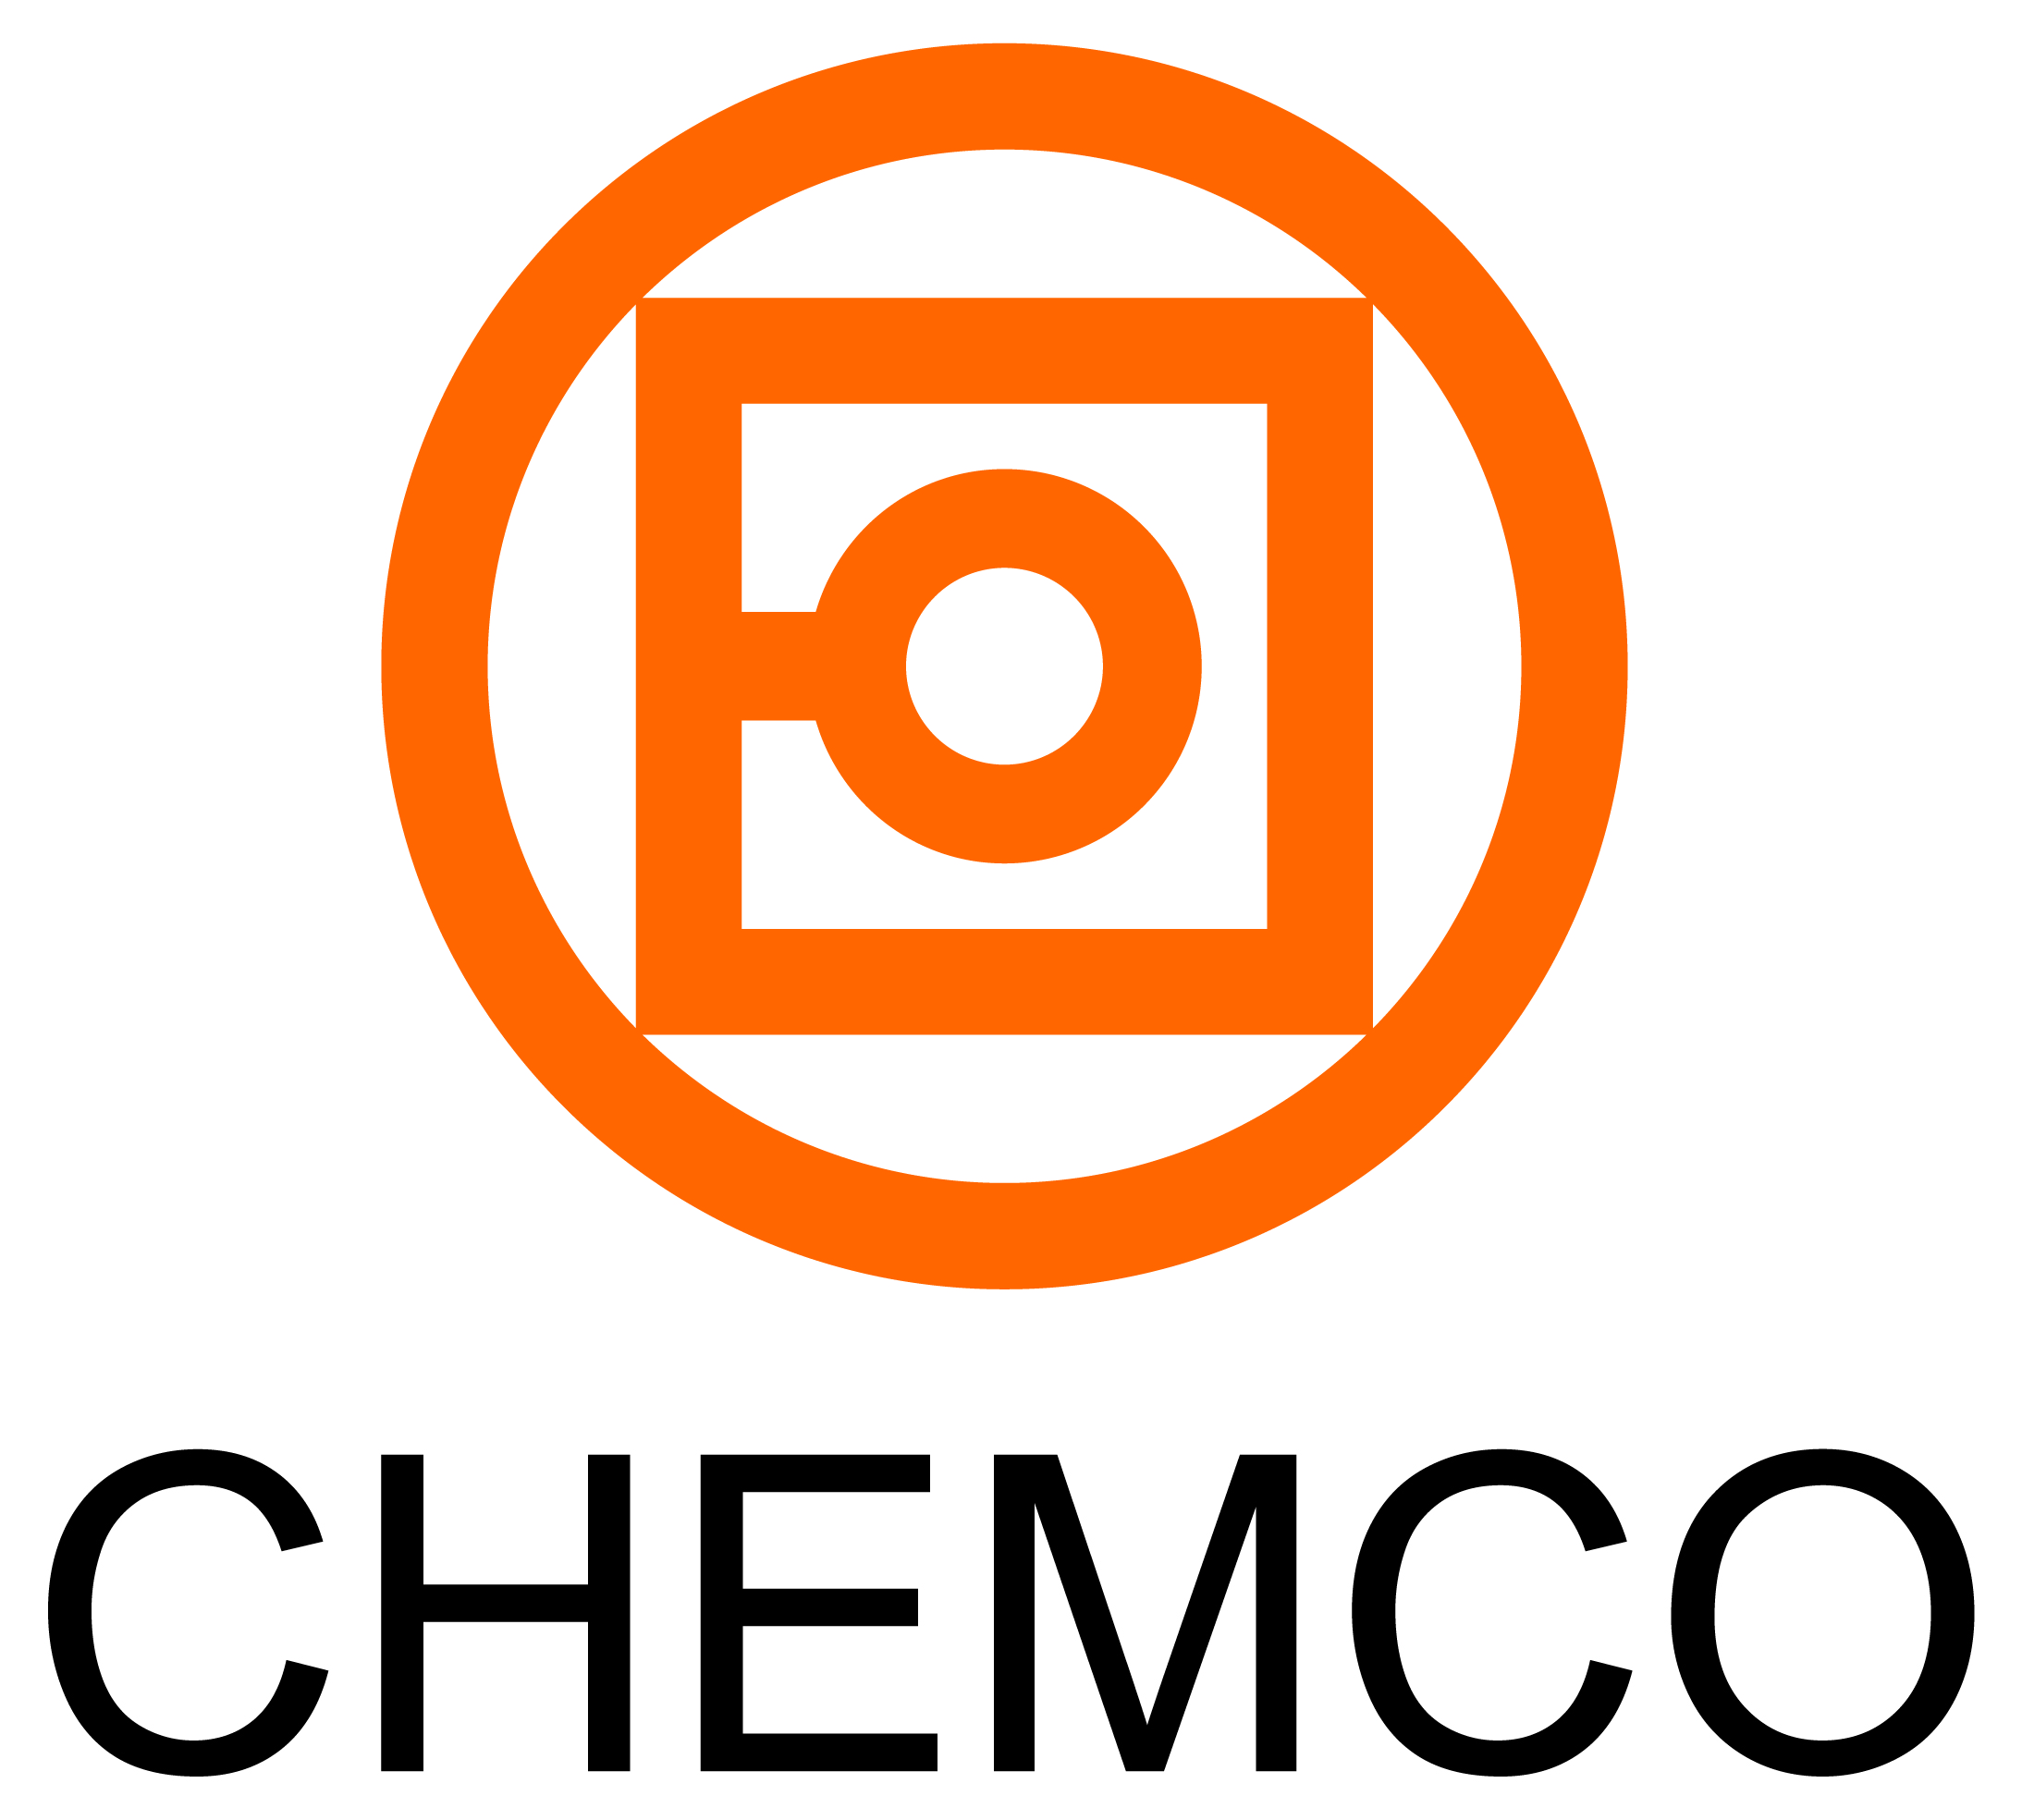 Chemco Advance Material (Suzhou) Co., Ltd. _logo